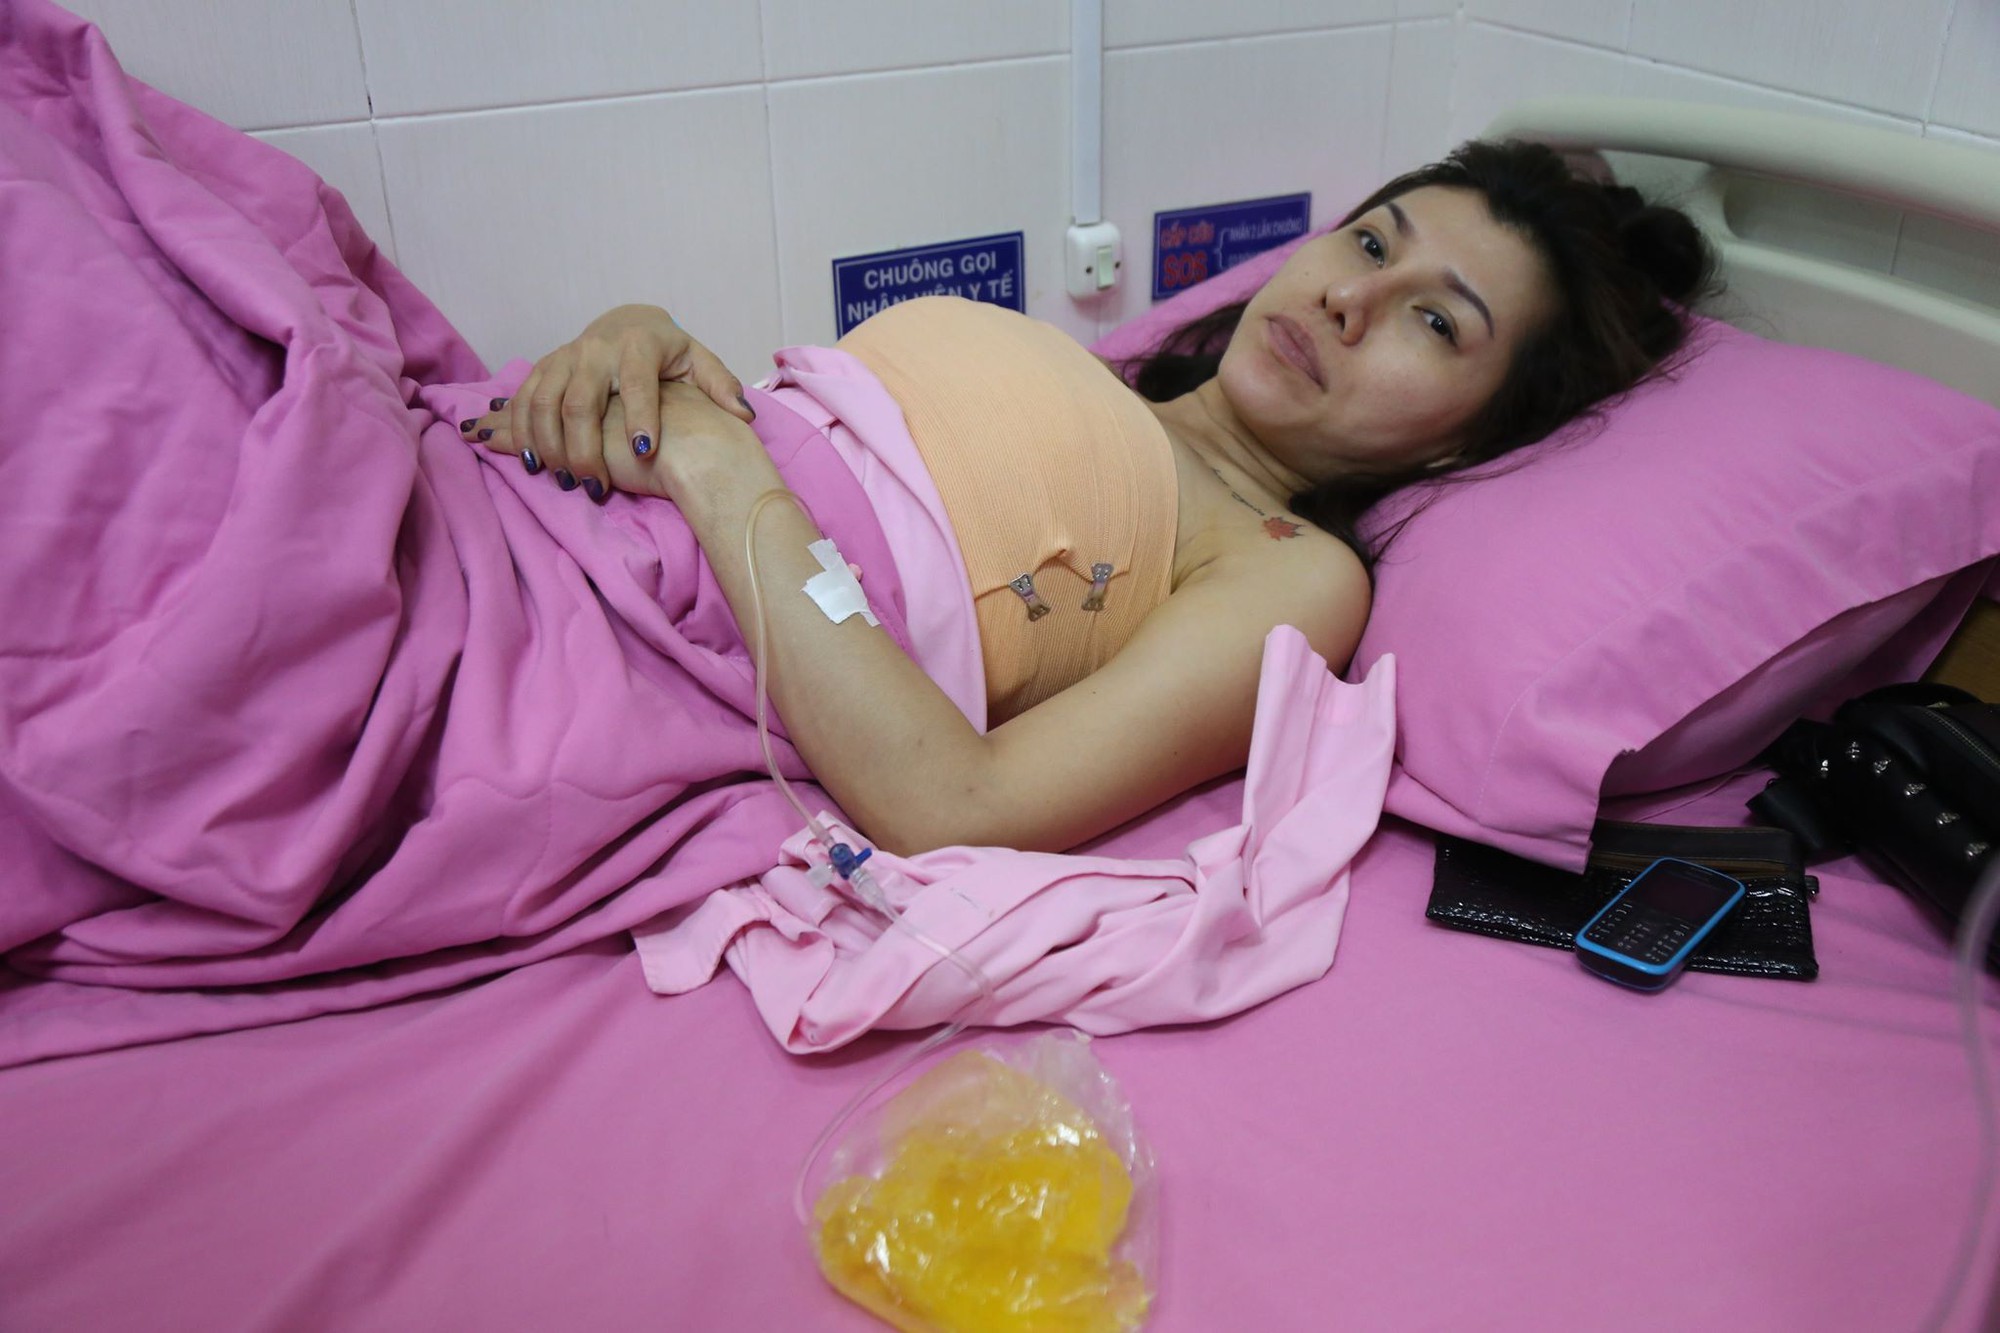 Em gái kết nghĩa của ca sĩ Quách Tuấn Du bất ngờ nhập viện, nghi bị vỡ túi ngực trên máy bay - Ảnh 6.